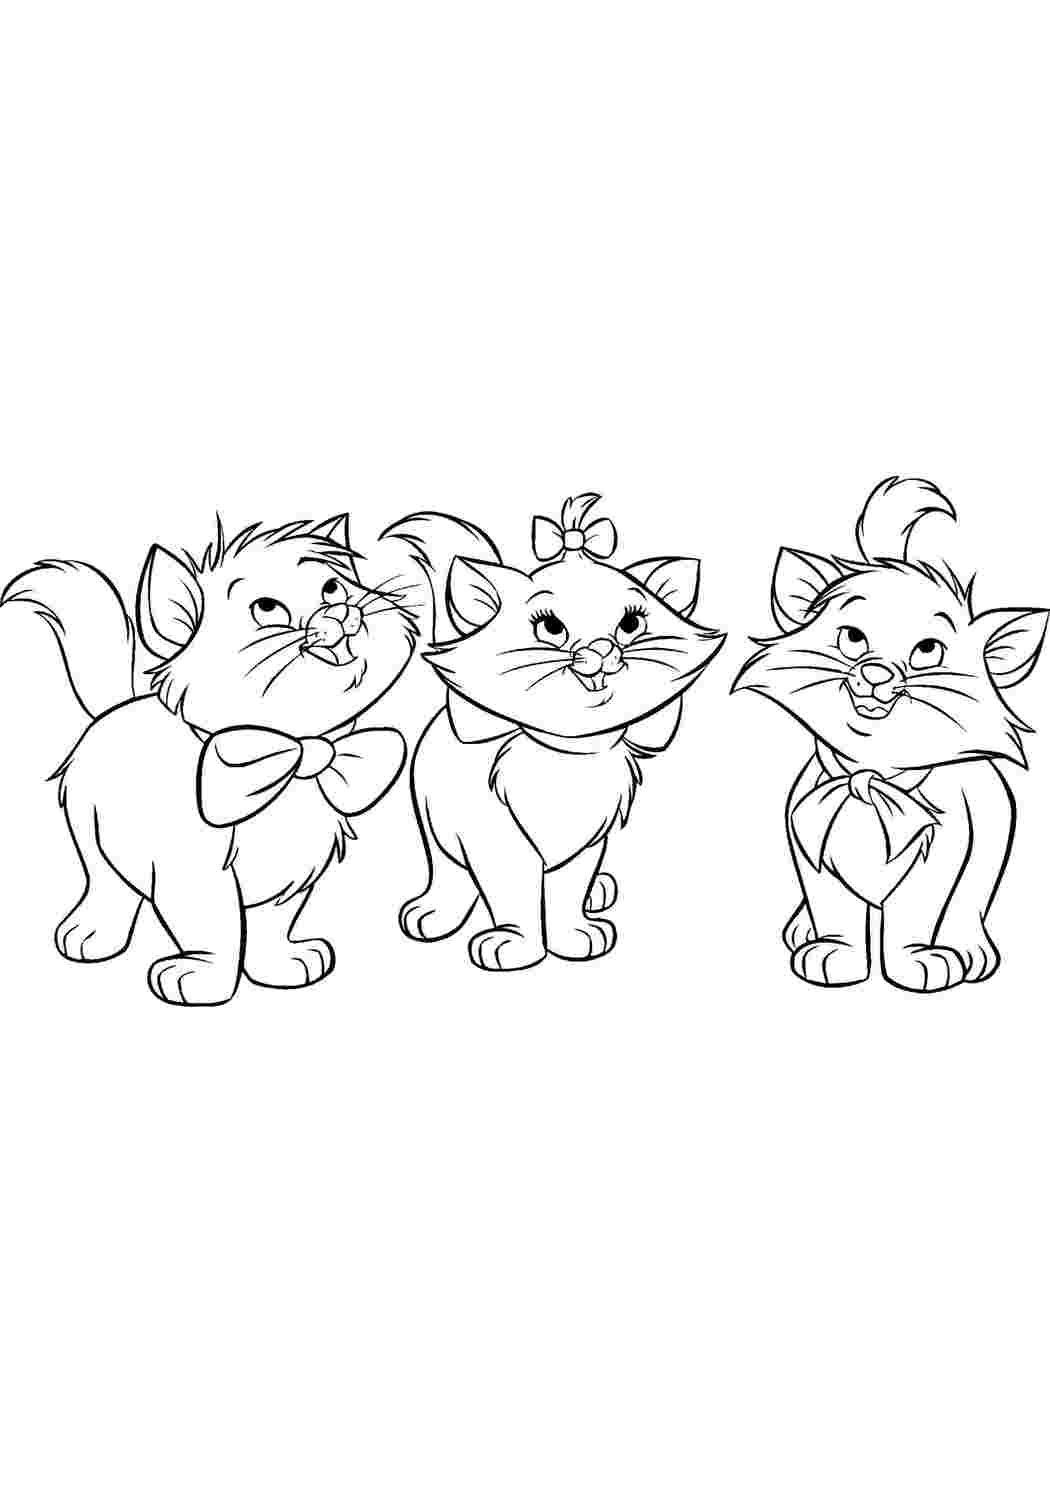 Раскраски из мультфильма Три кота. Раскраски Три кота скачать для детей скачать